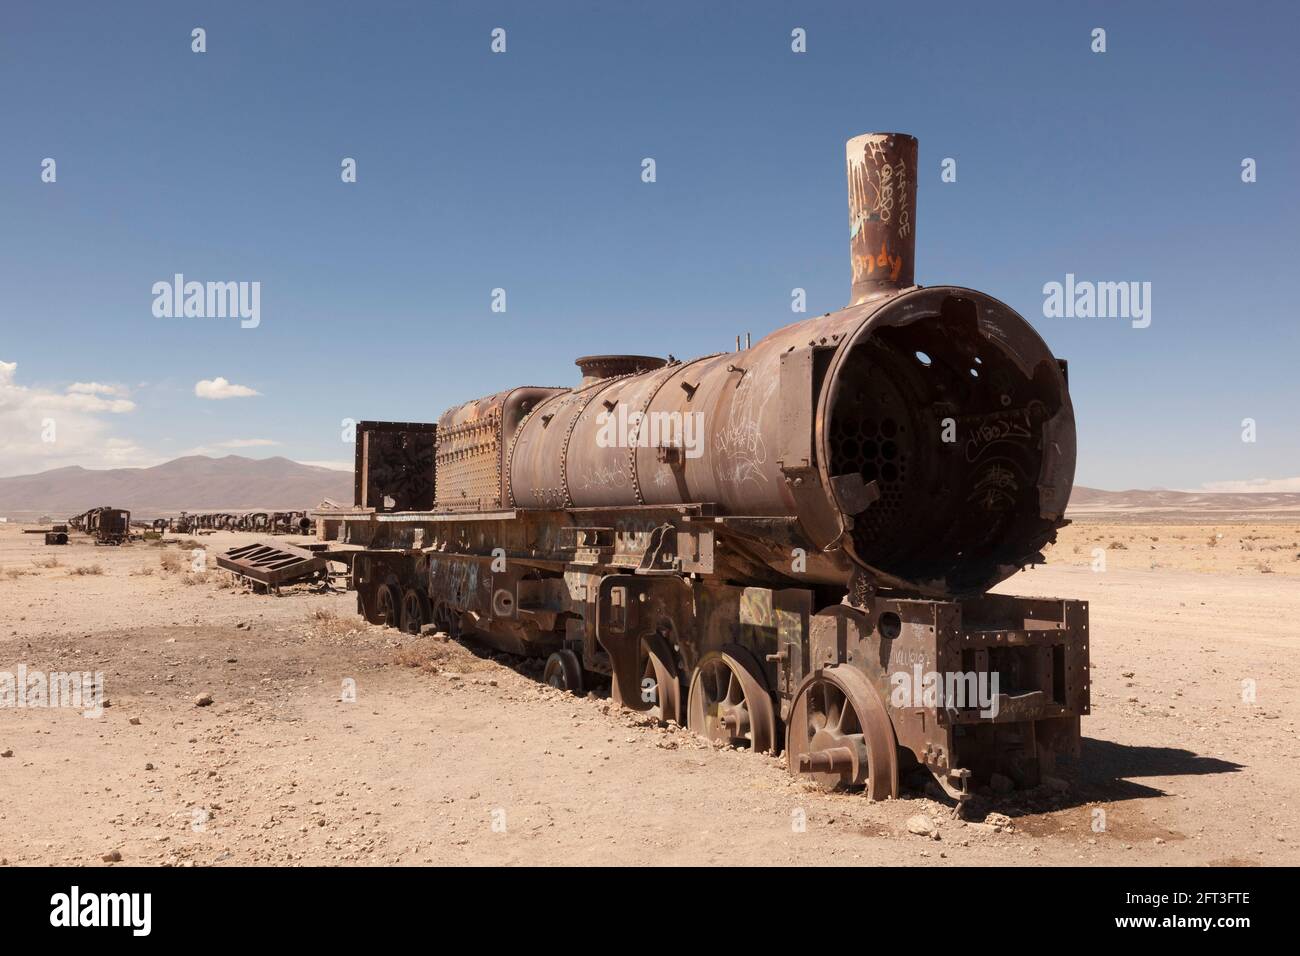 The steam train cemetery, Uyuni, Bolivia Stock Photo